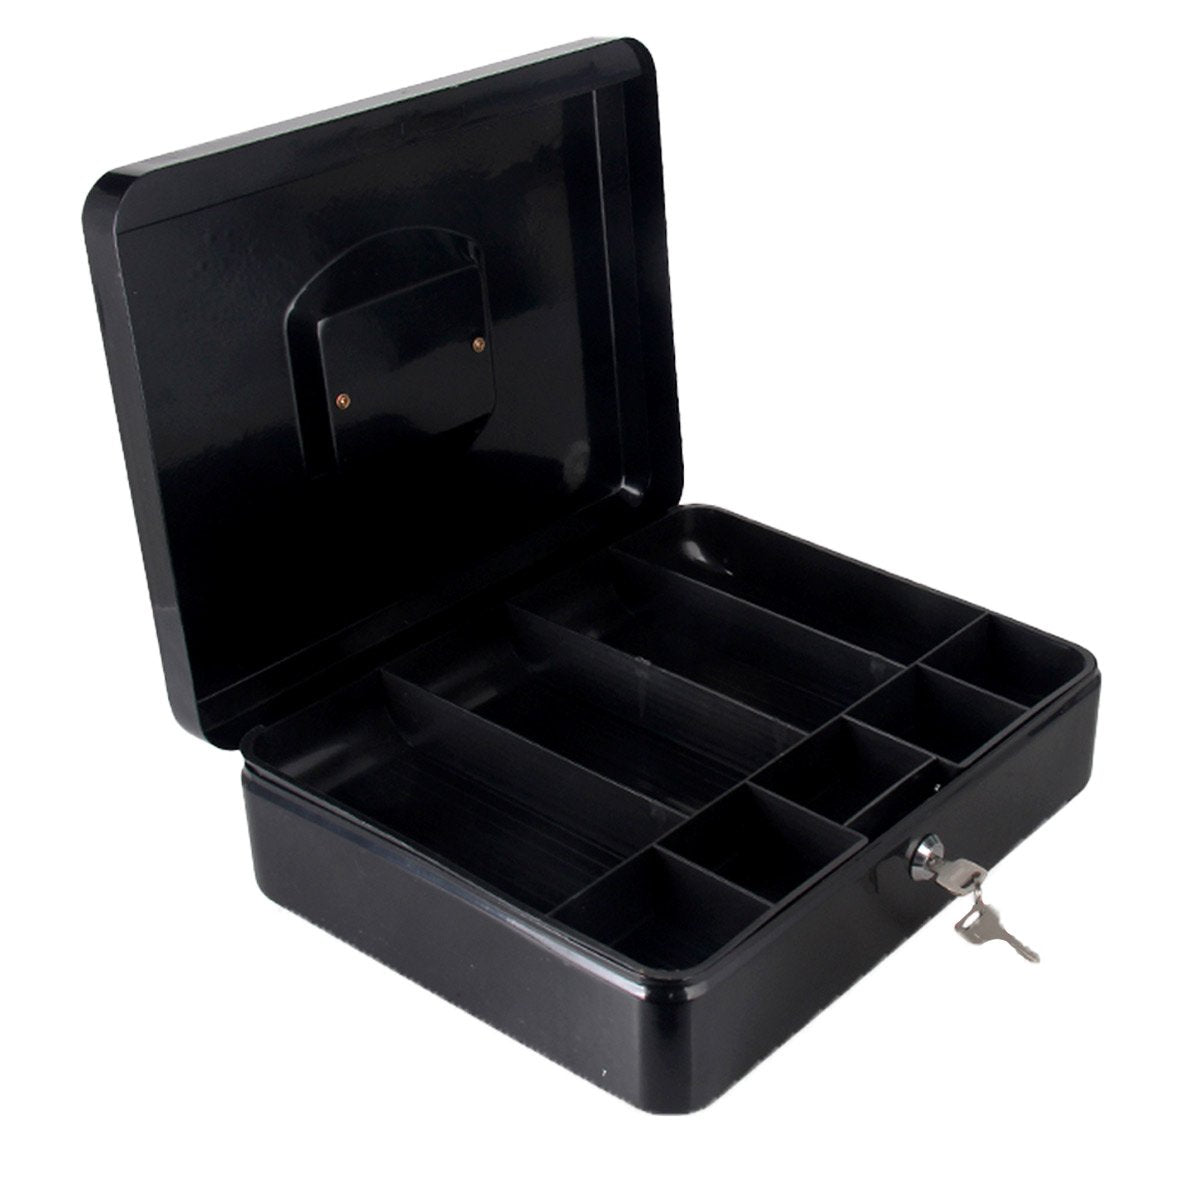 Cassetta Portavalori di Sicurezza in Acciaio con 2 Chiavi, Cassette dei contanti Vassoio Portamonete Integrato Dimensioni 30x24x9 cm, Colore Nero